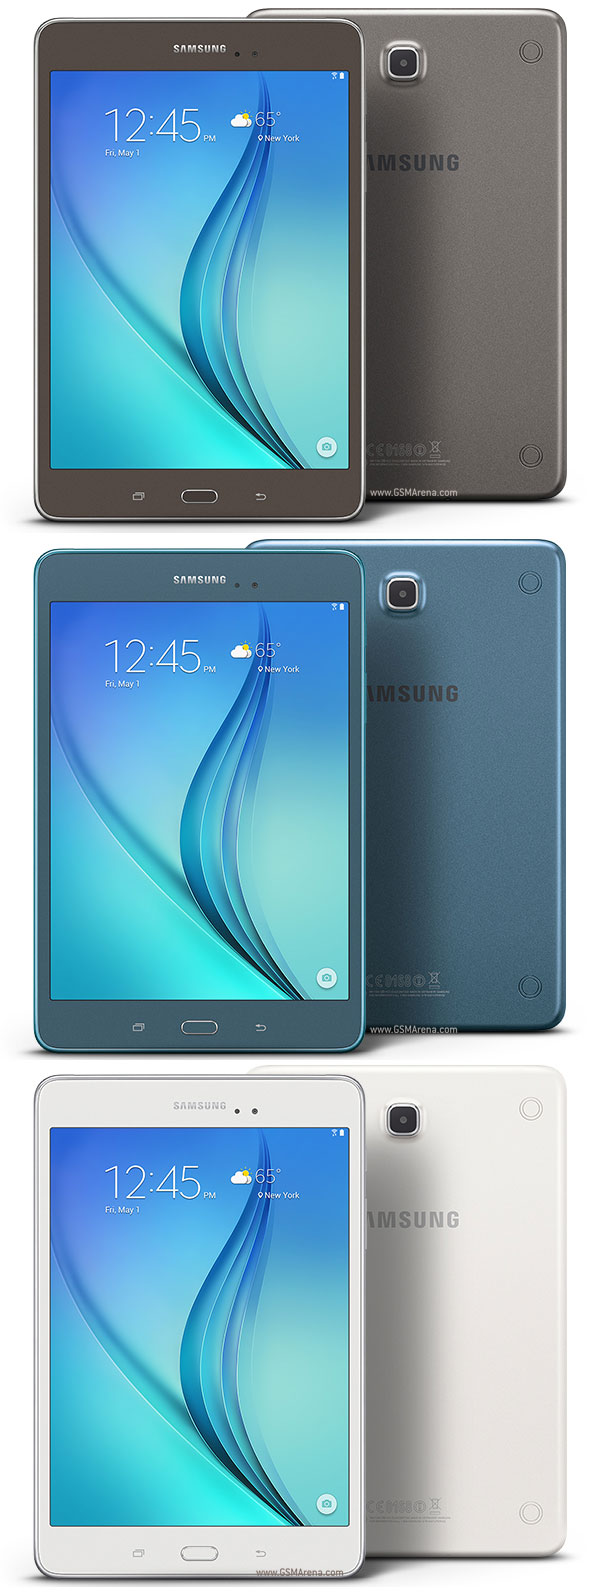   T355 Samsung Galaxy Tab A 8.0LTE   V5.0.2 A